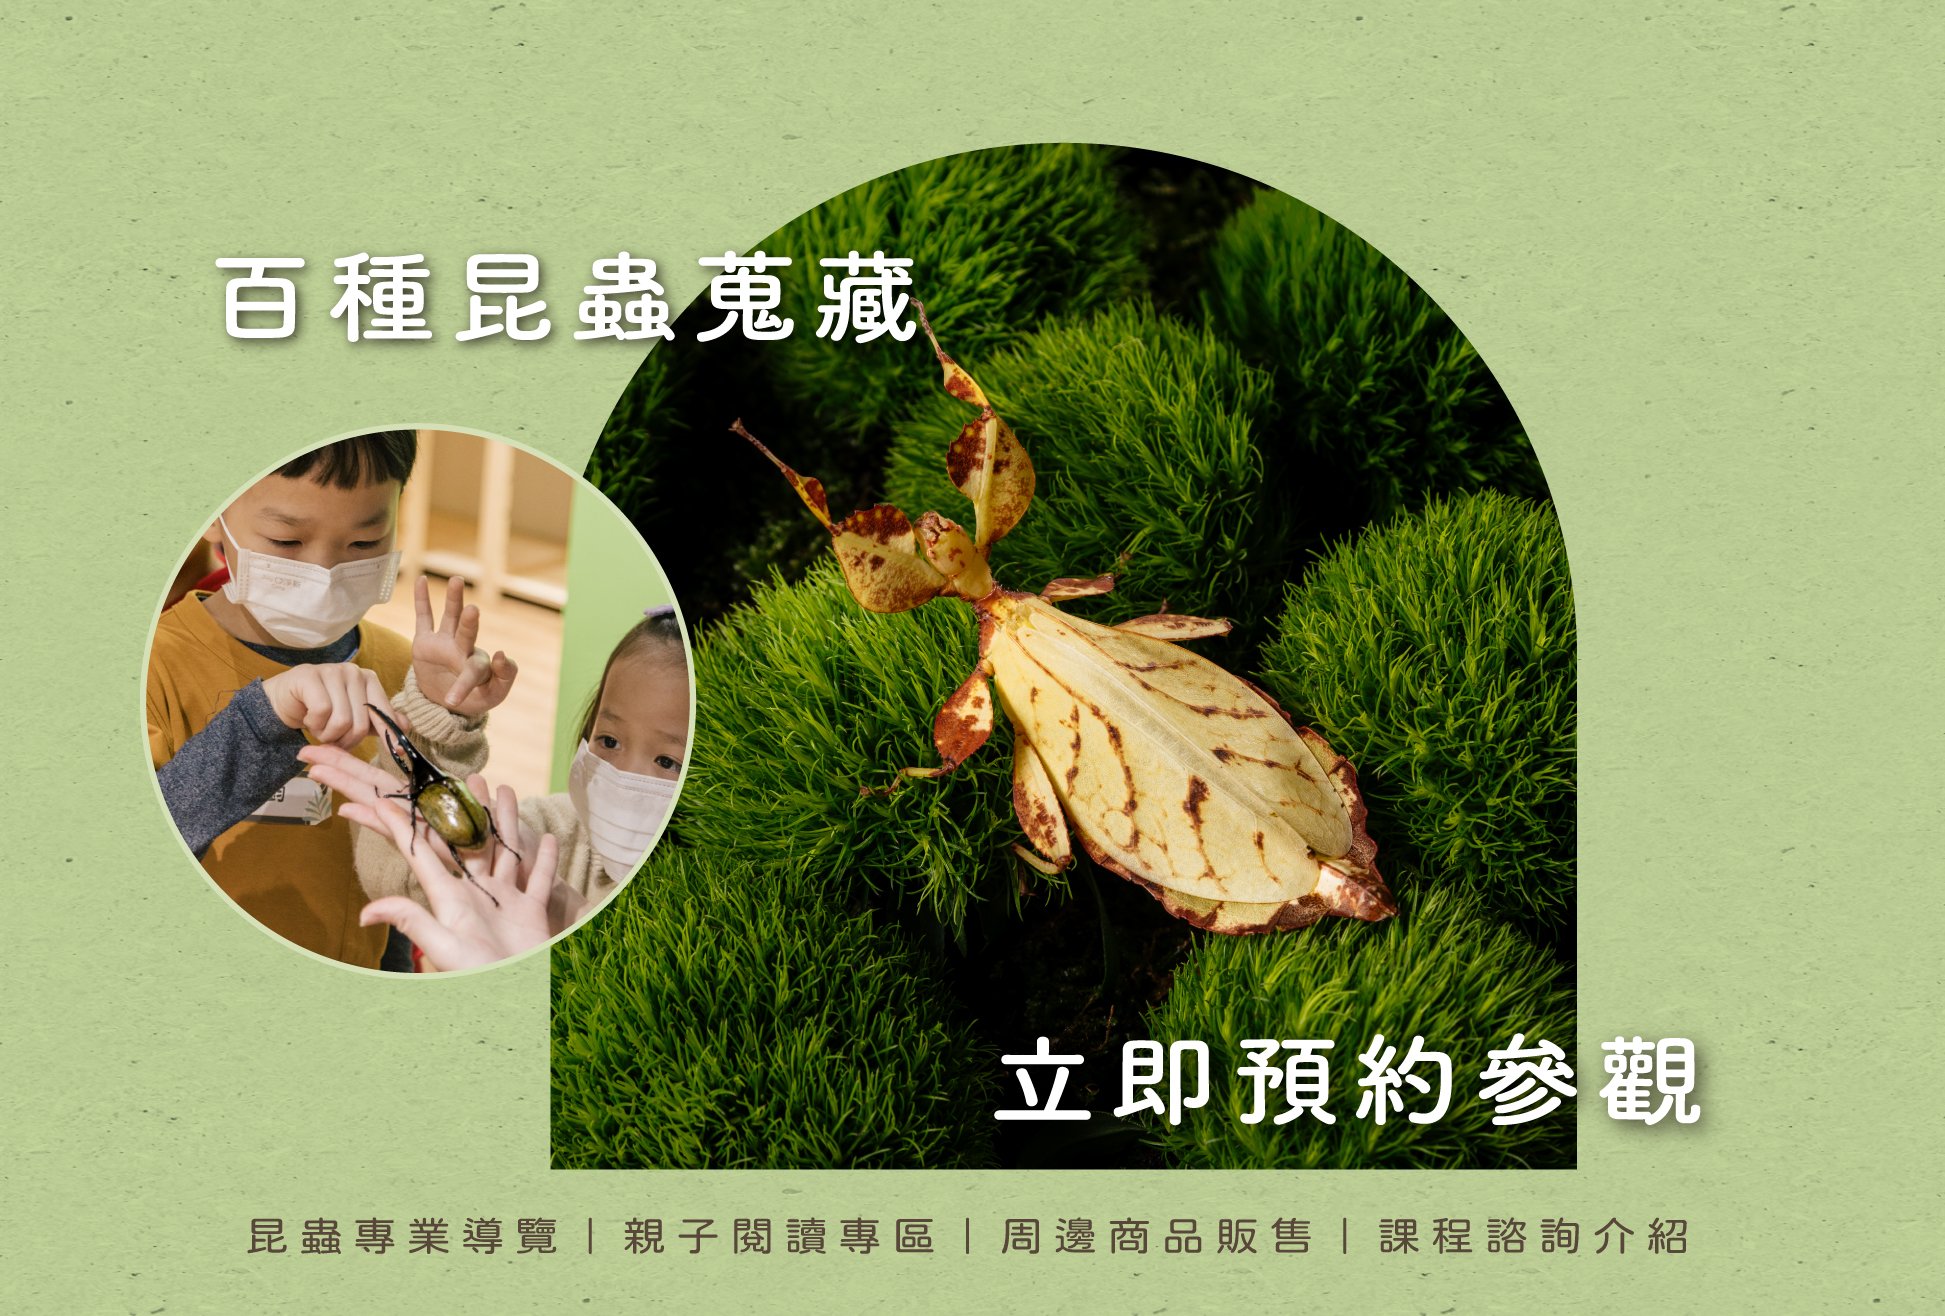 蟲蟲巴斯Entobuzz | 昆蟲生態體驗教育| 蟲蟲巴斯EntoBuzz